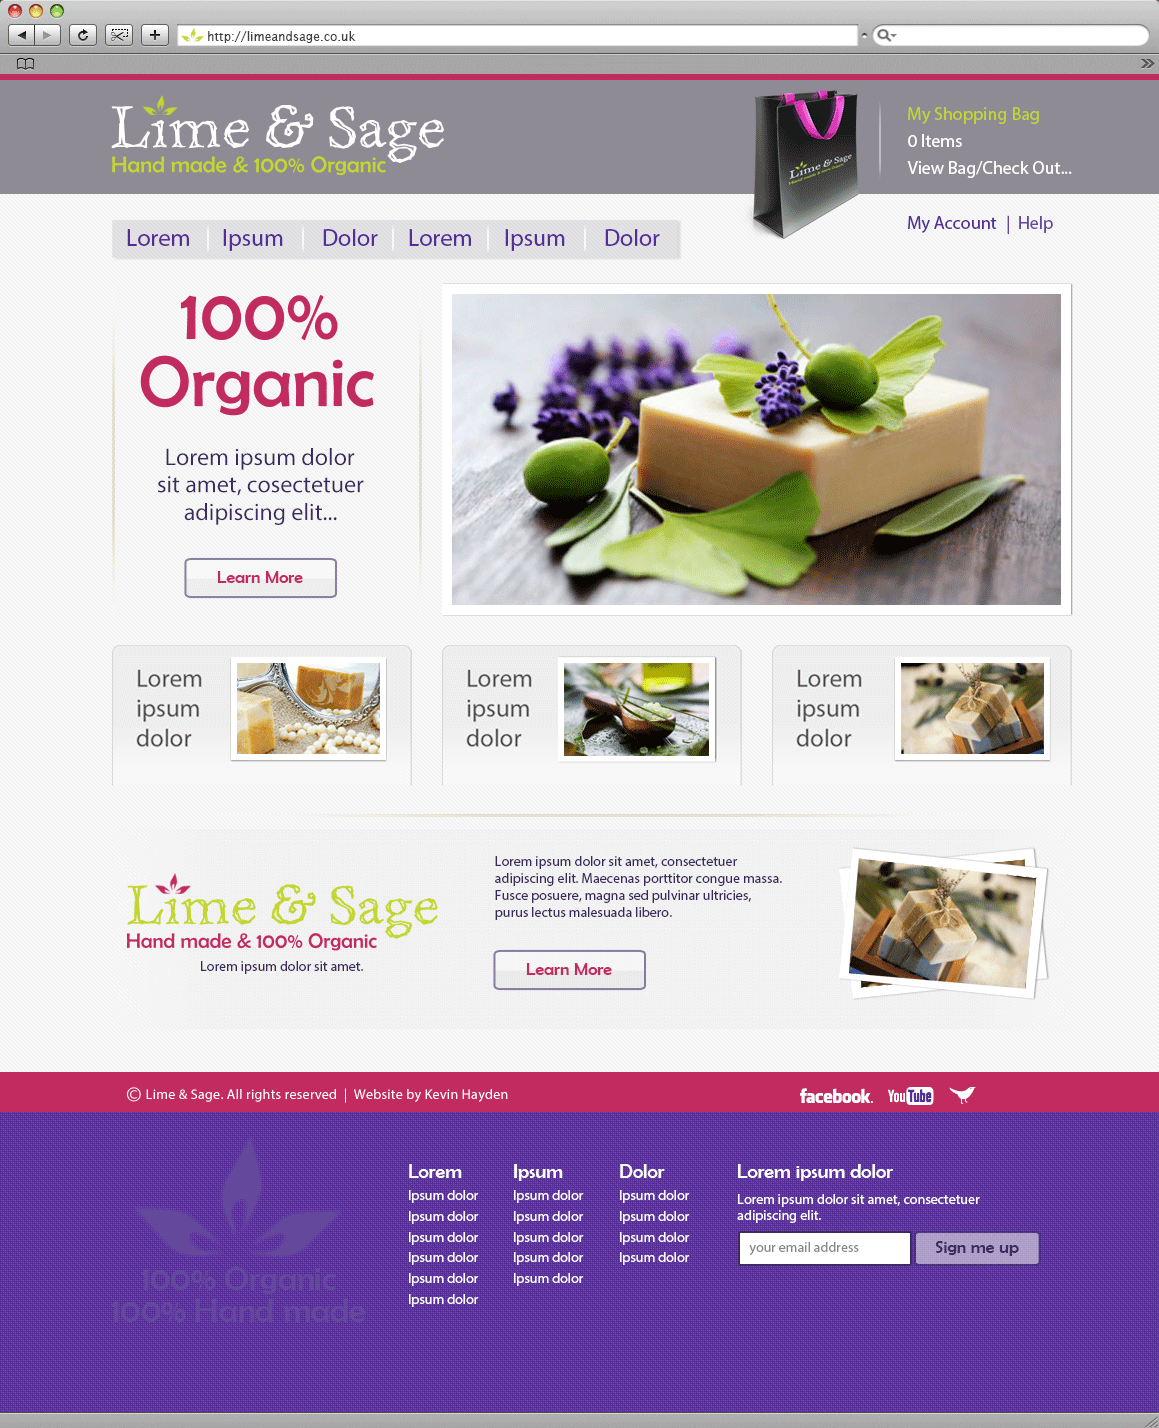 Lime & Sage website image.